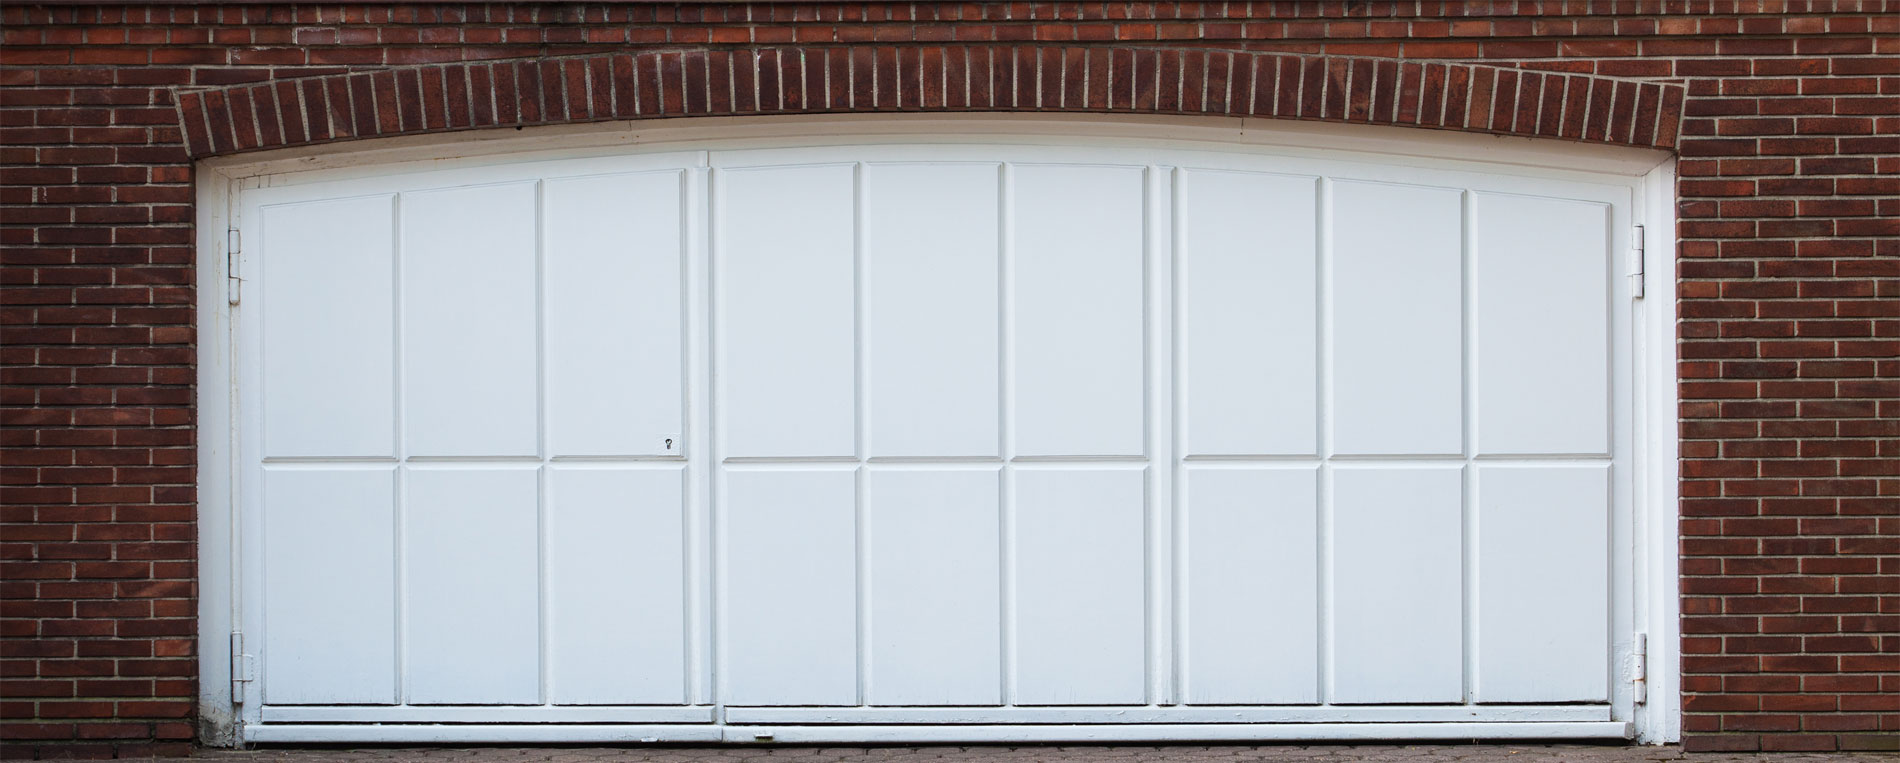 Popular Garage Door Questions